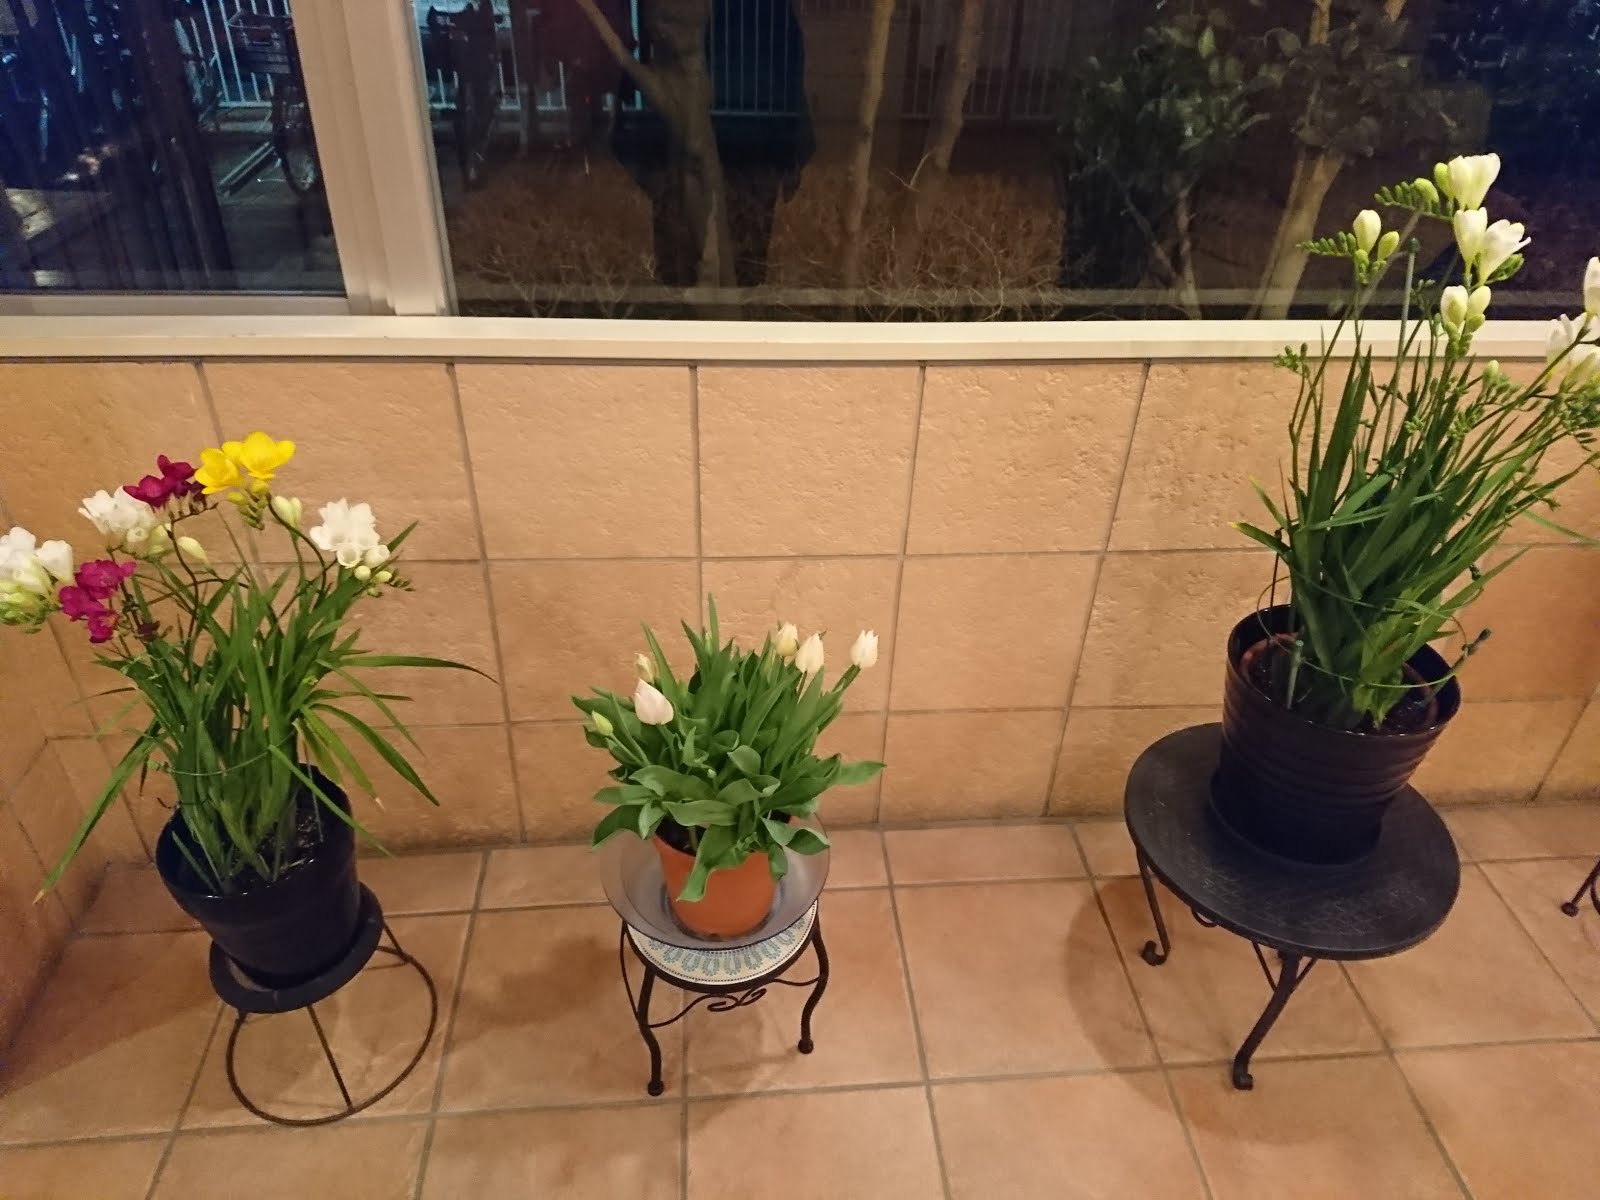 八木東一のブログ 3 22日 52 マンションに着いた 玄関には花が咲いた5つの鉢が置かれていた